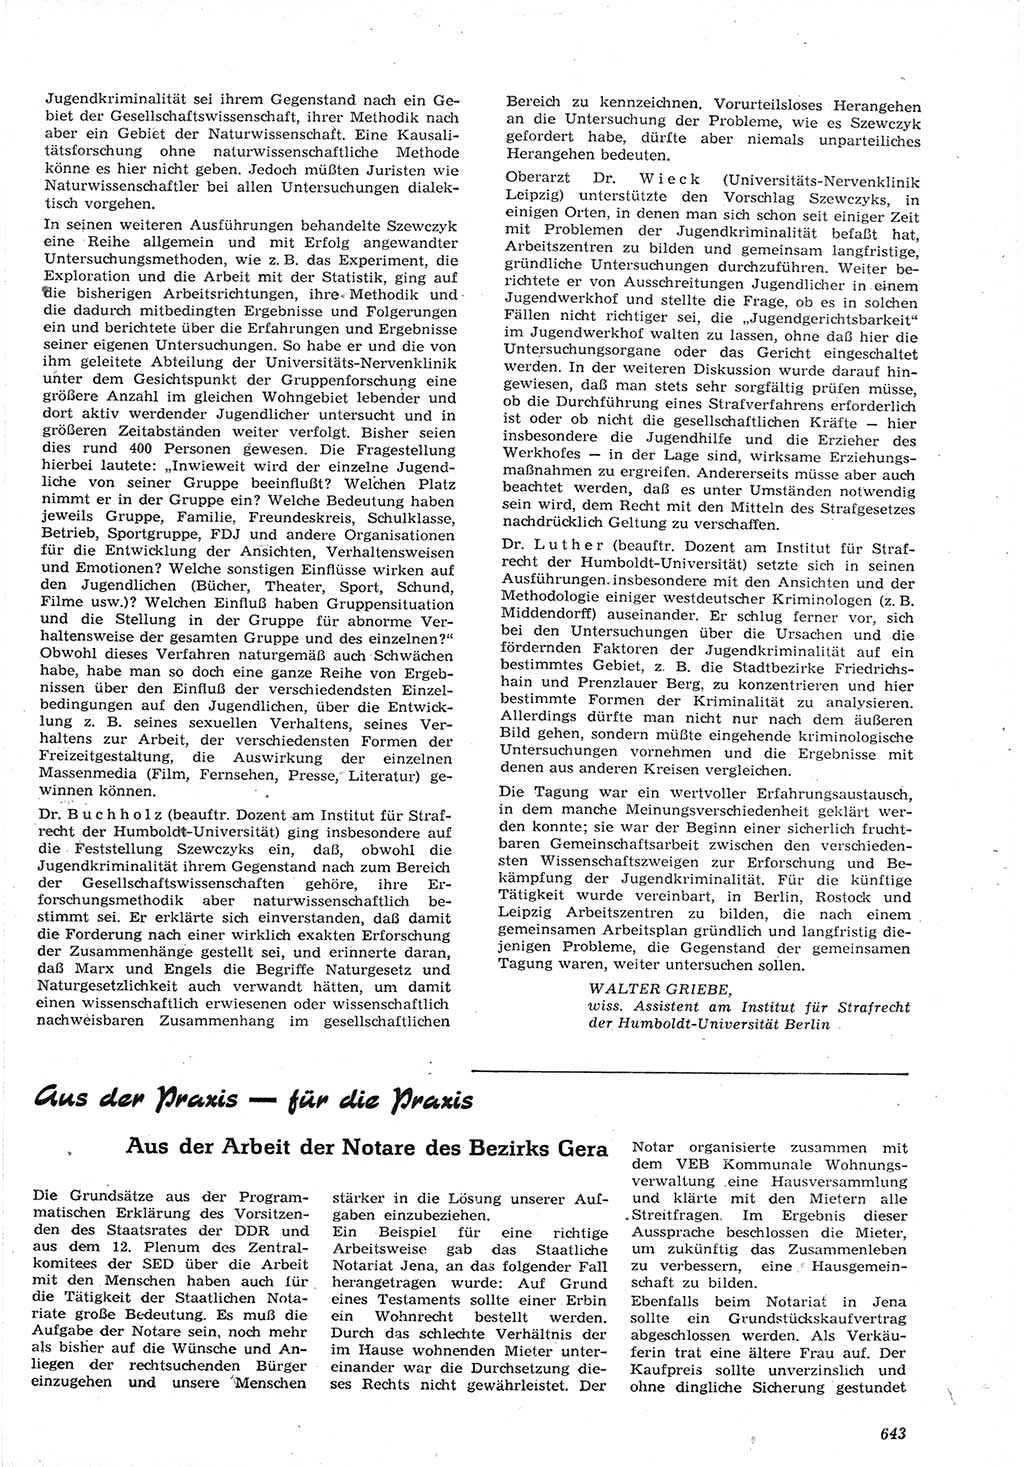 Neue Justiz (NJ), Zeitschrift für Recht und Rechtswissenschaft [Deutsche Demokratische Republik (DDR)], 15. Jahrgang 1961, Seite 643 (NJ DDR 1961, S. 643)